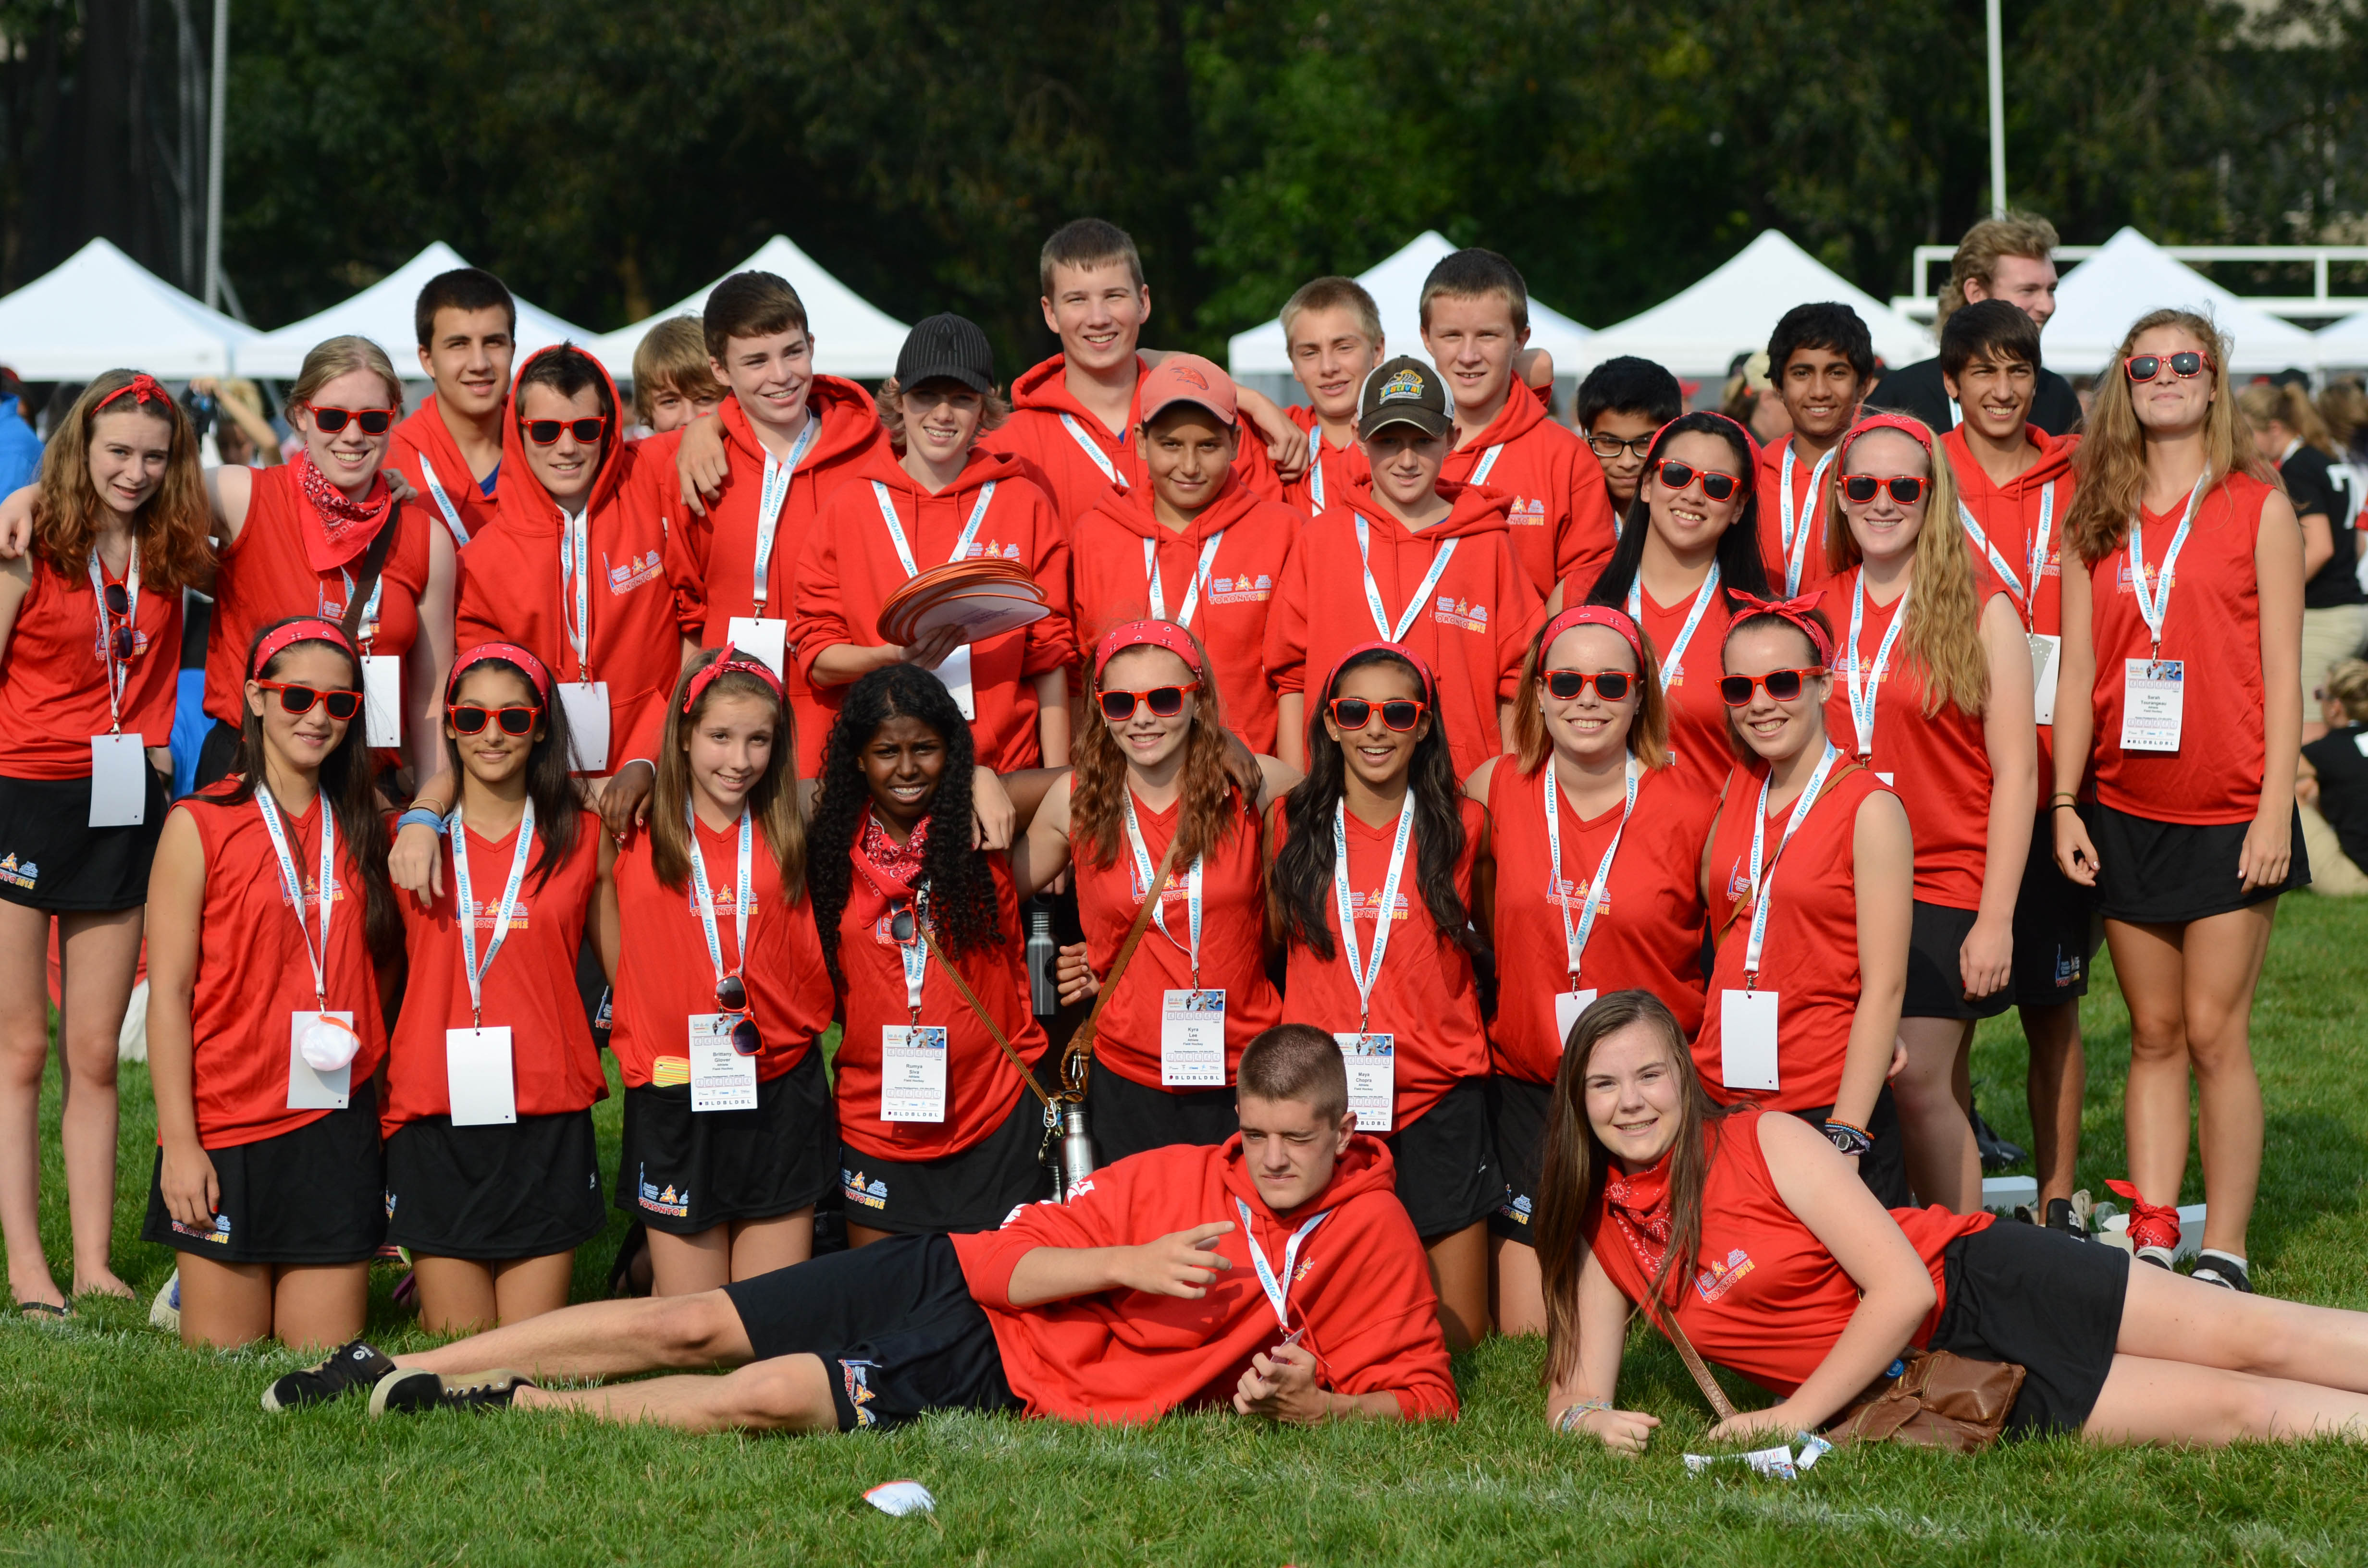 Ontario Summer Games 2012